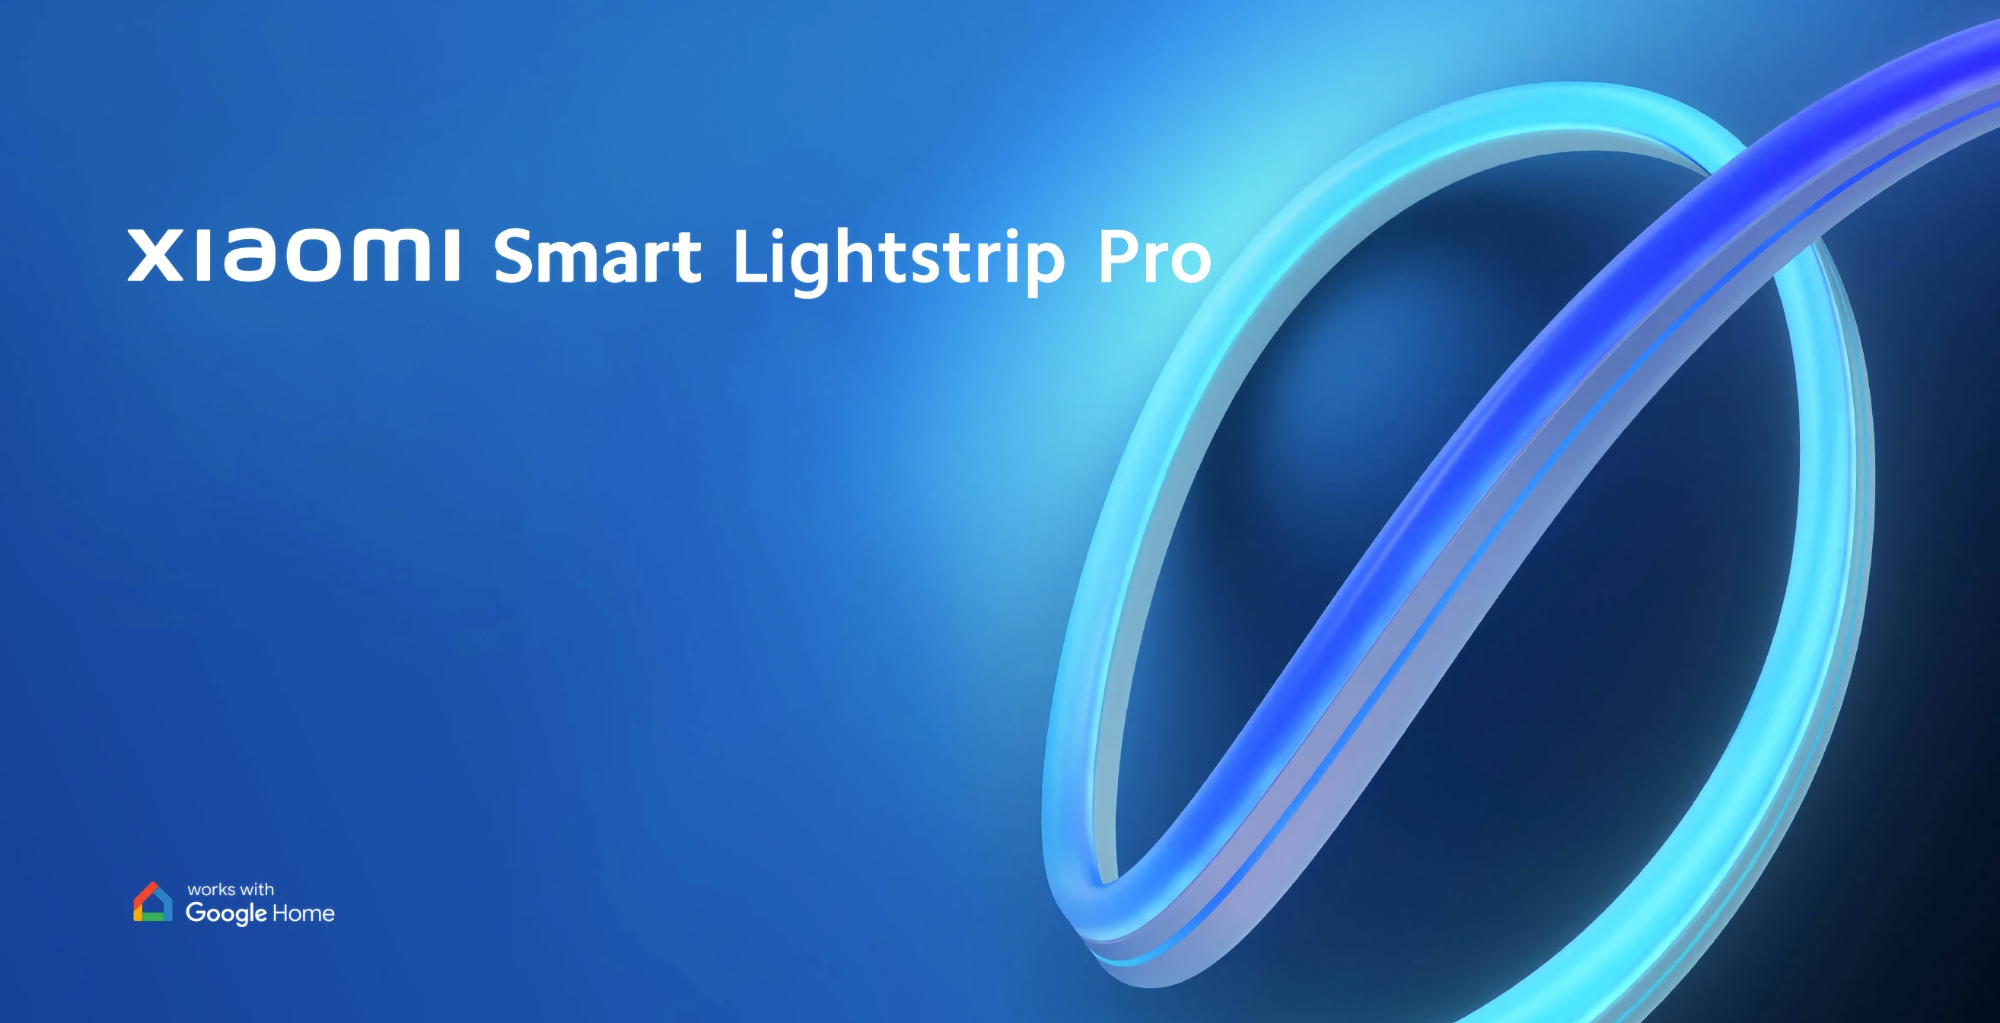 Xiaomi odsłania Smart Lightstrip Pro w Europie: taśma RGB z obsługą Google Home za 69 euro